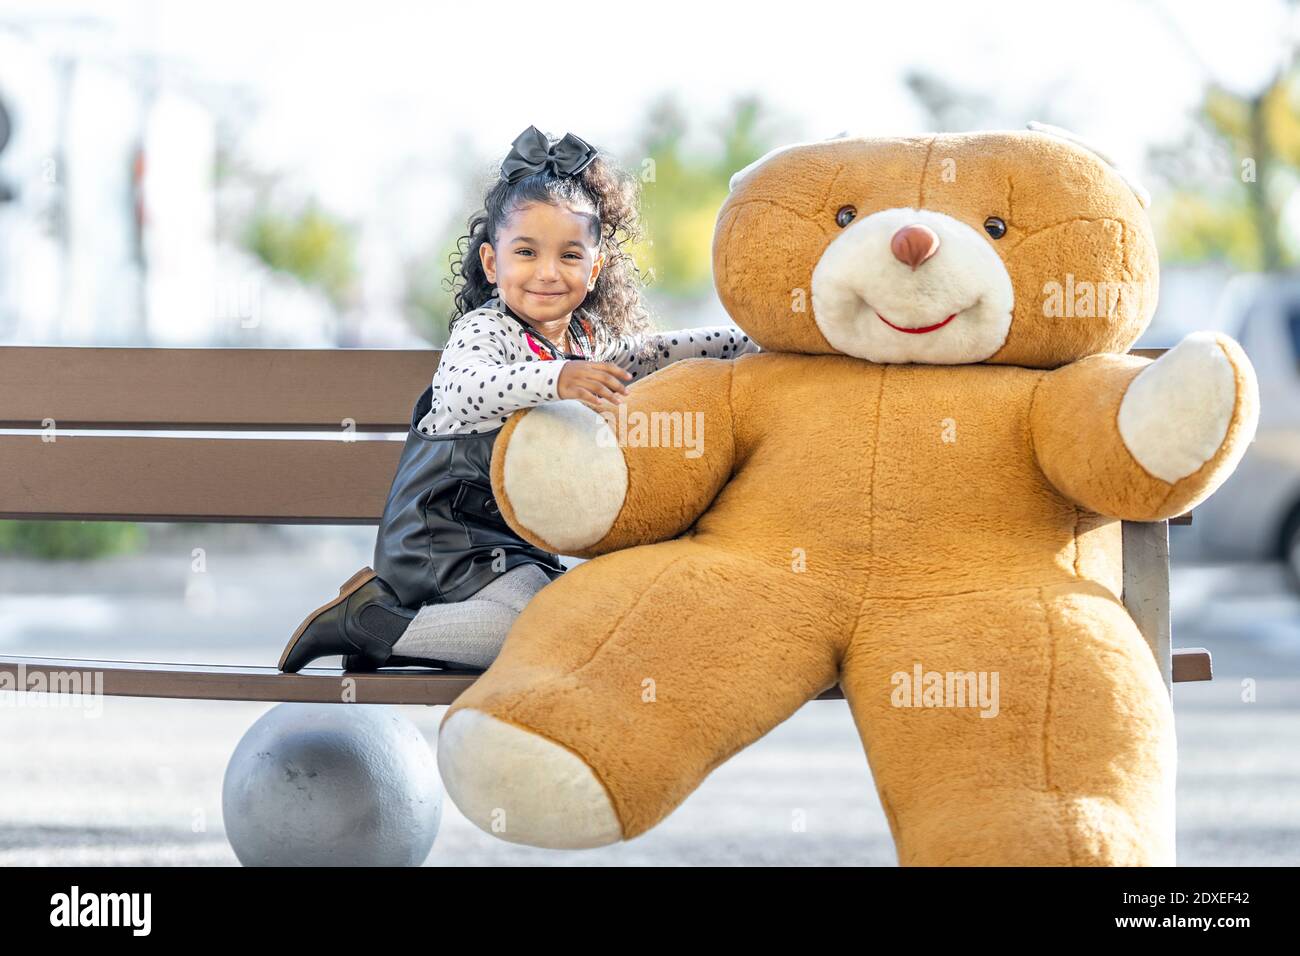 Fille souriante assise avec un ours en peluche sur le banc Banque D'Images